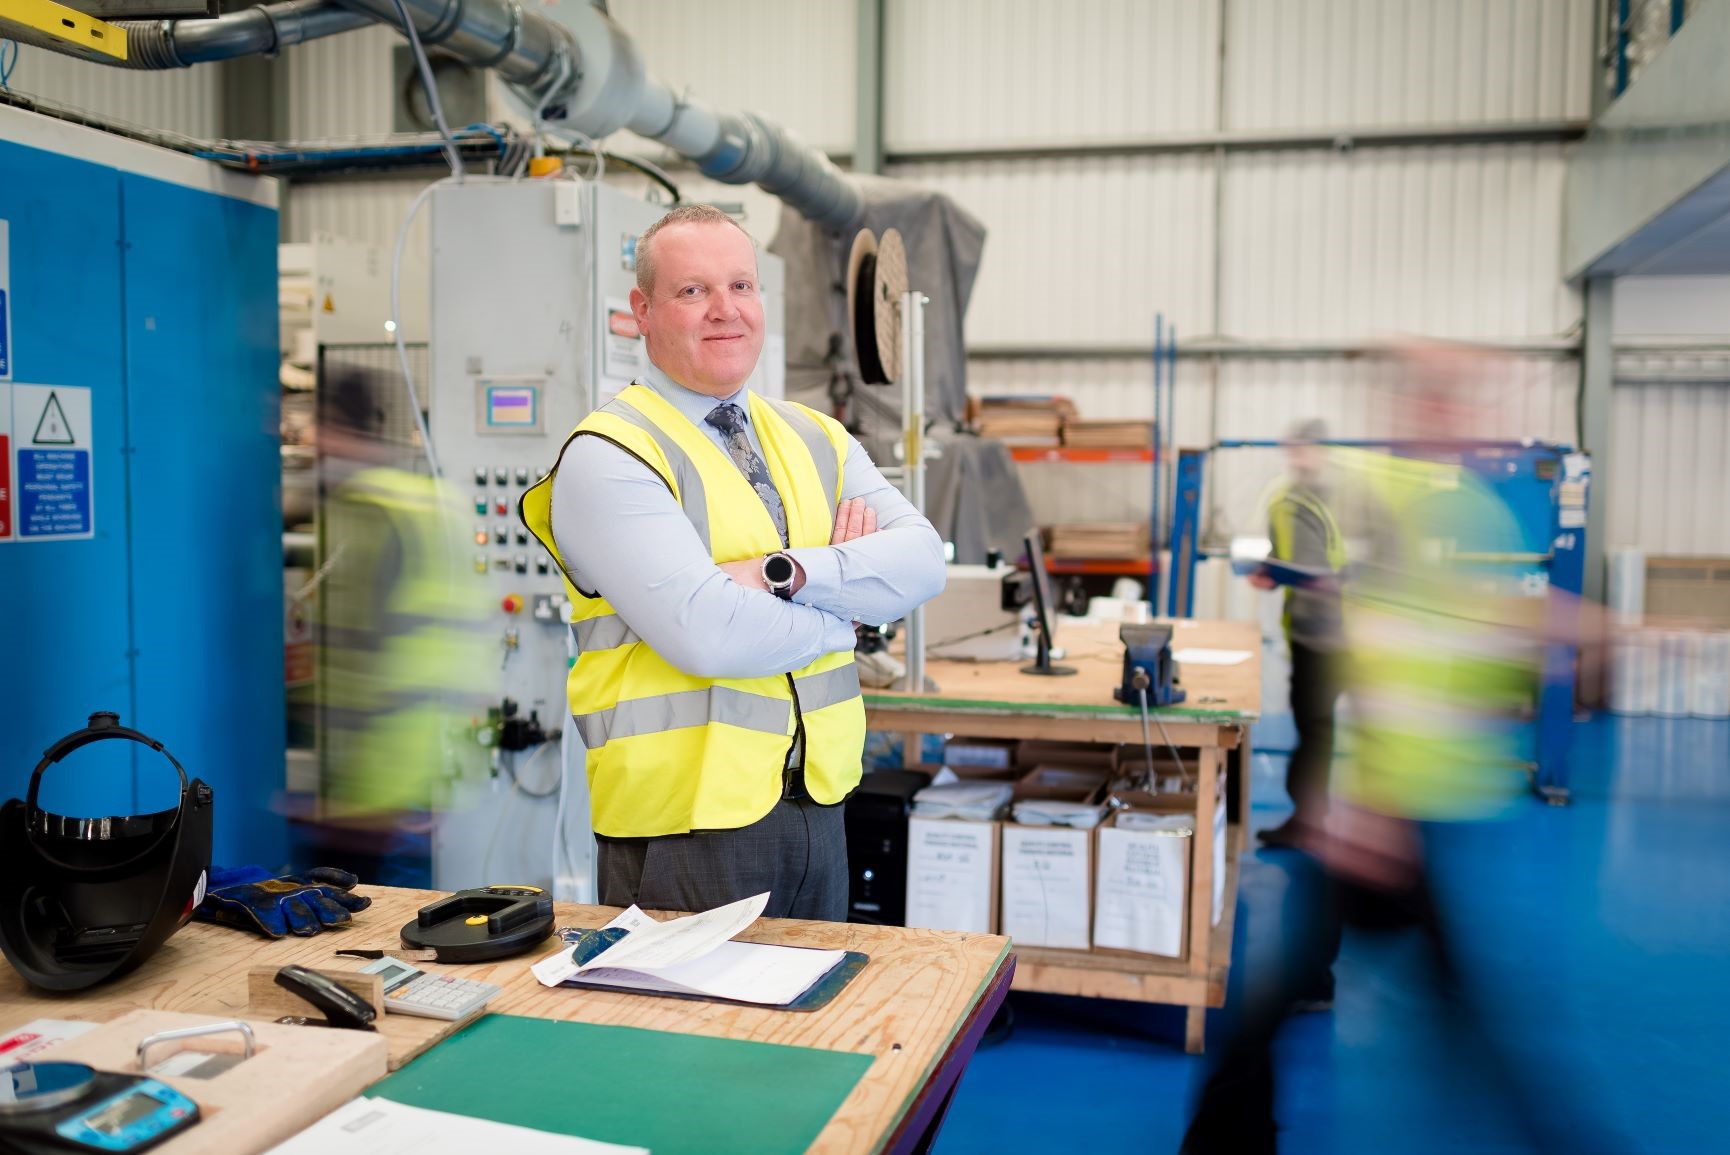 Derbyshire insulation manufacturer lands £250,000 funding package @Maven_CP @YBSInsulation